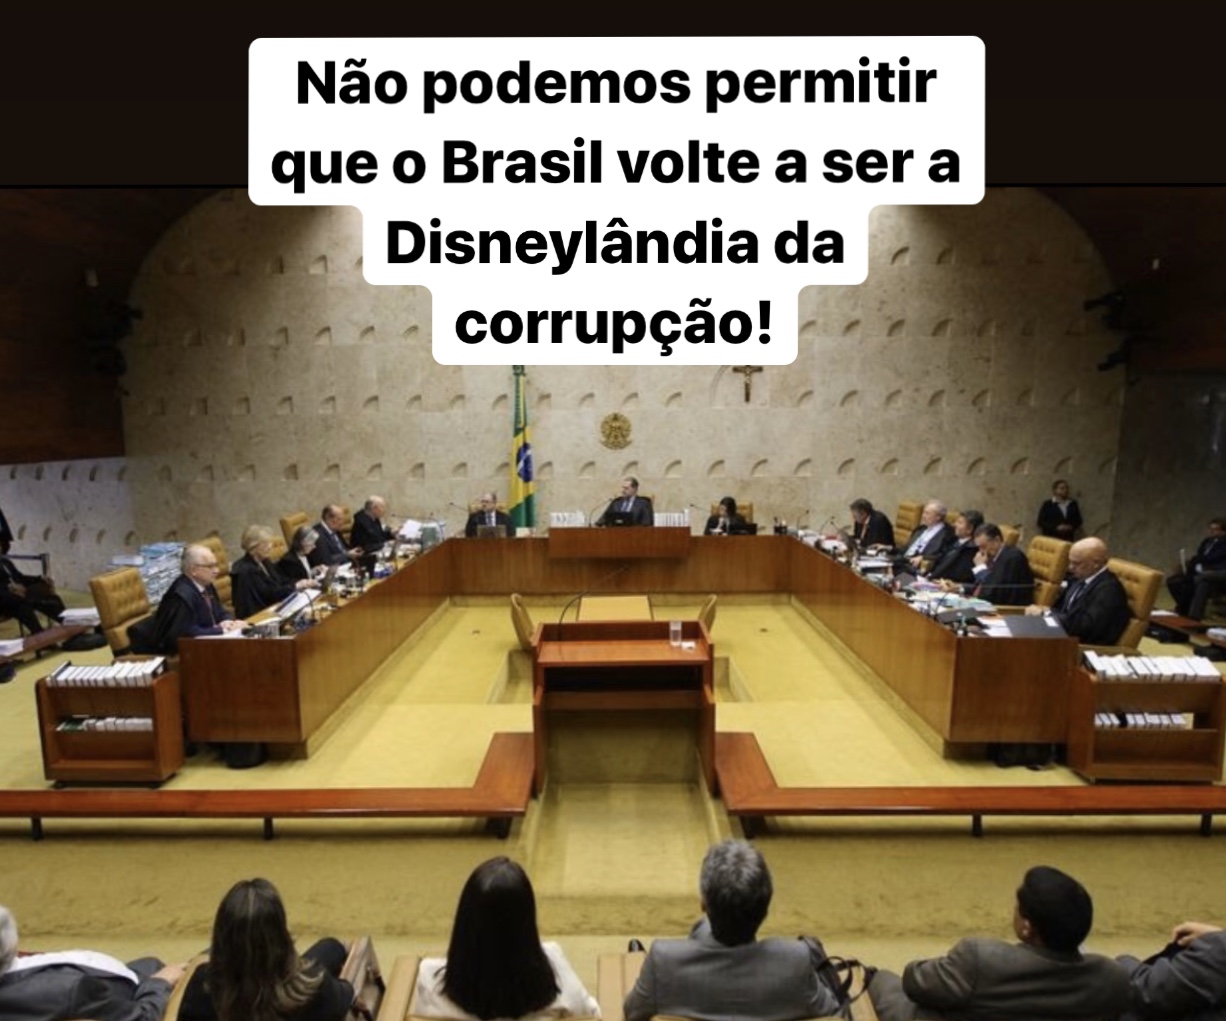 Não podemos permitir que o Brasil volte a ser a disneylândia da corrupção!